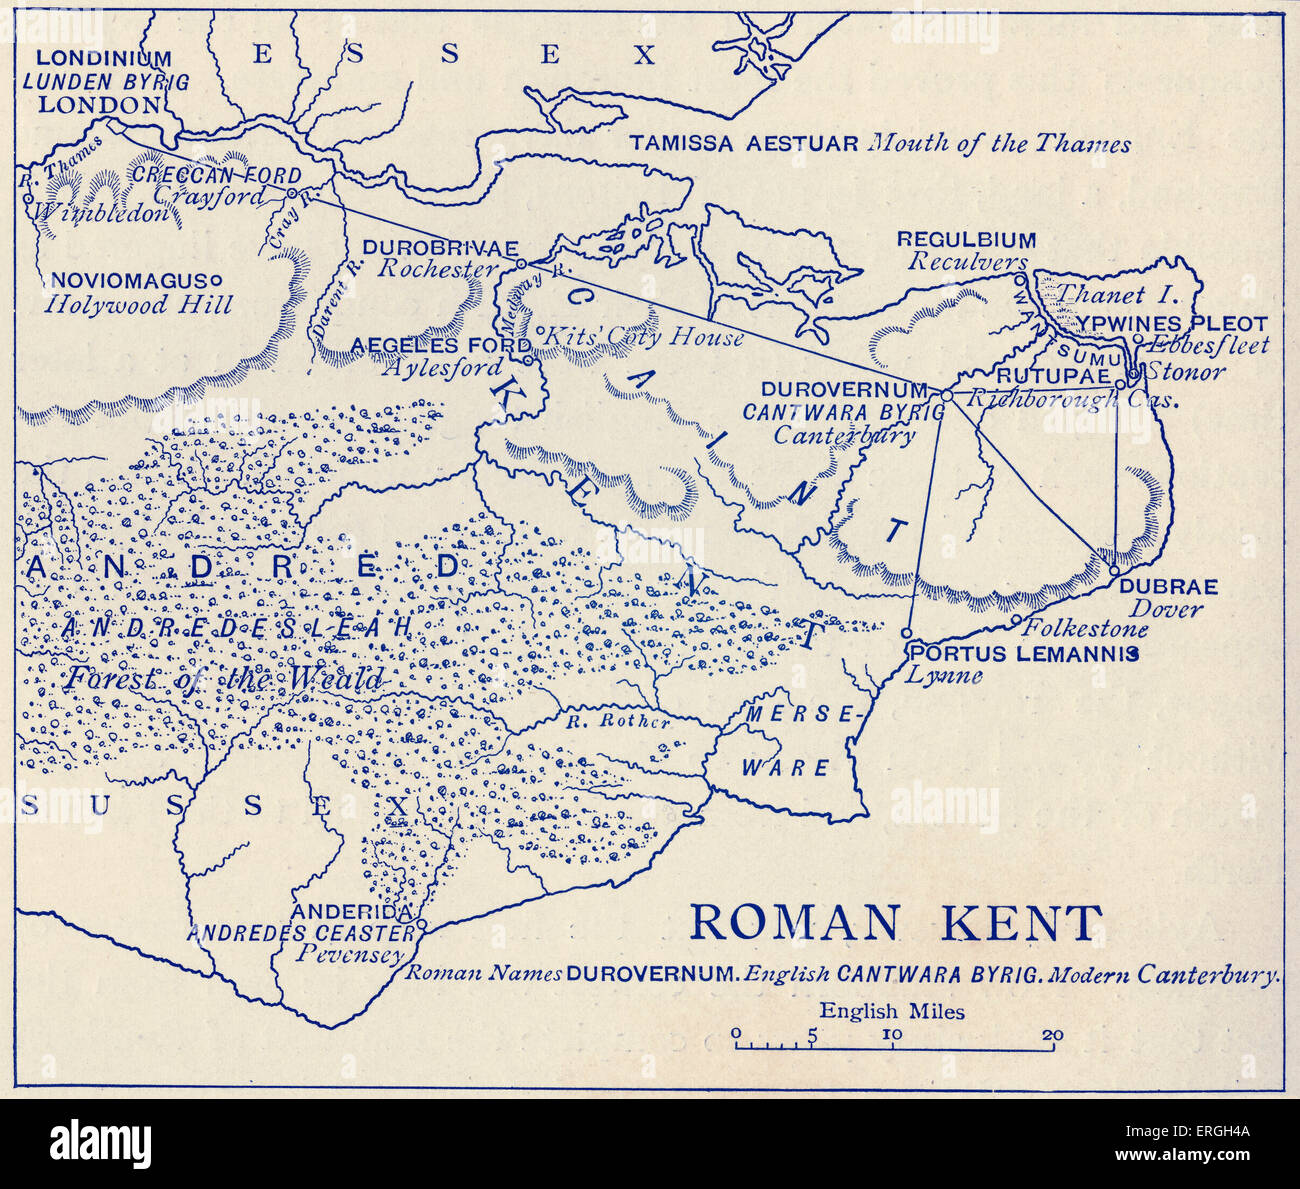 Mapa de Roman Kent. Bretaña romana fue la parte de la isla de Gran Bretaña controlada por el Imperio Romano desde el año 43 hasta c. Foto de stock